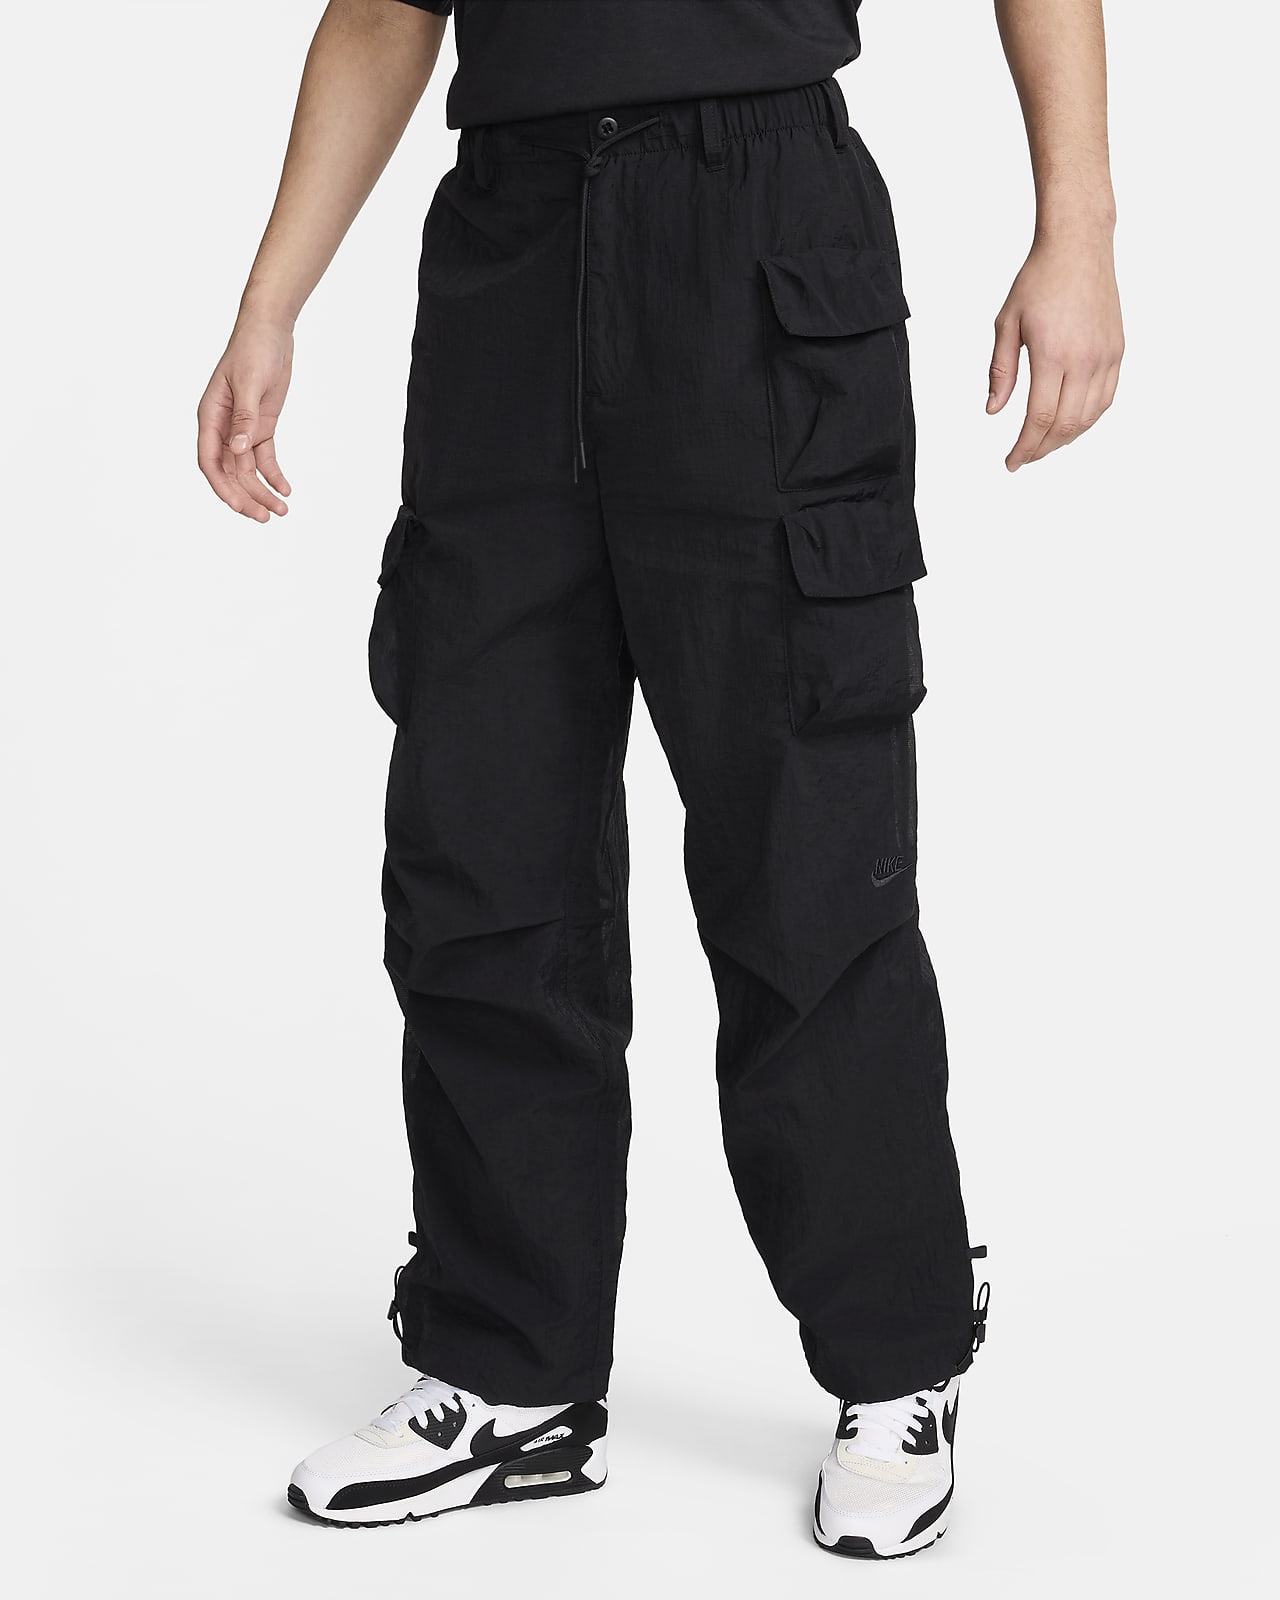 Pánské tkané kalhoty Nike Sportswear Tech Pack s podšívkou